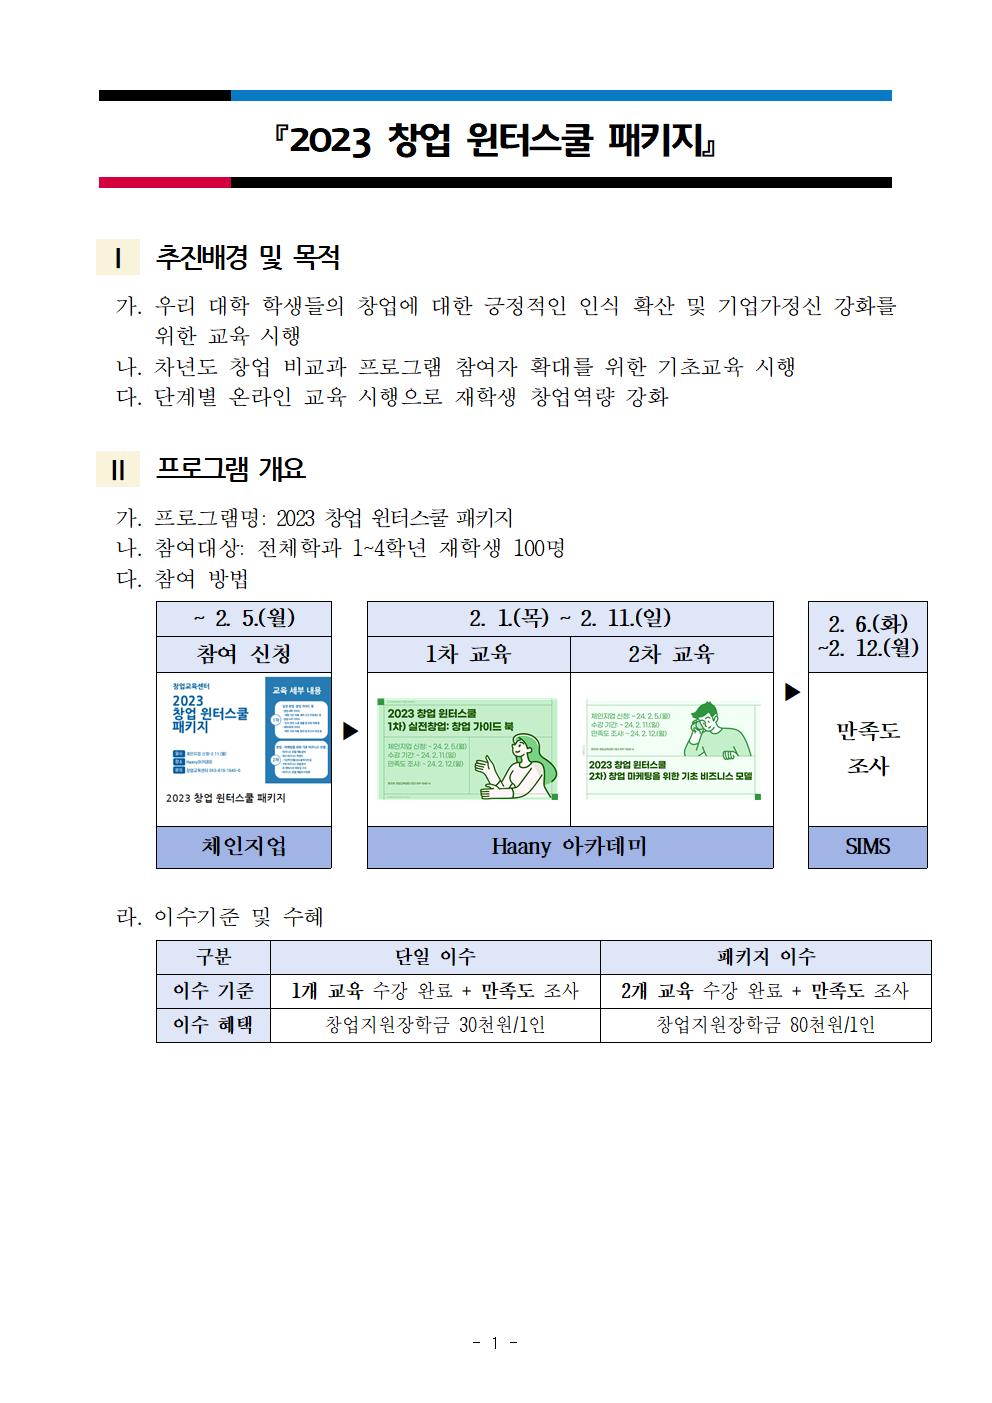 (붙임1) 공지사항_2023 창업 윈터스쿨 패키지(2종)001.jpg